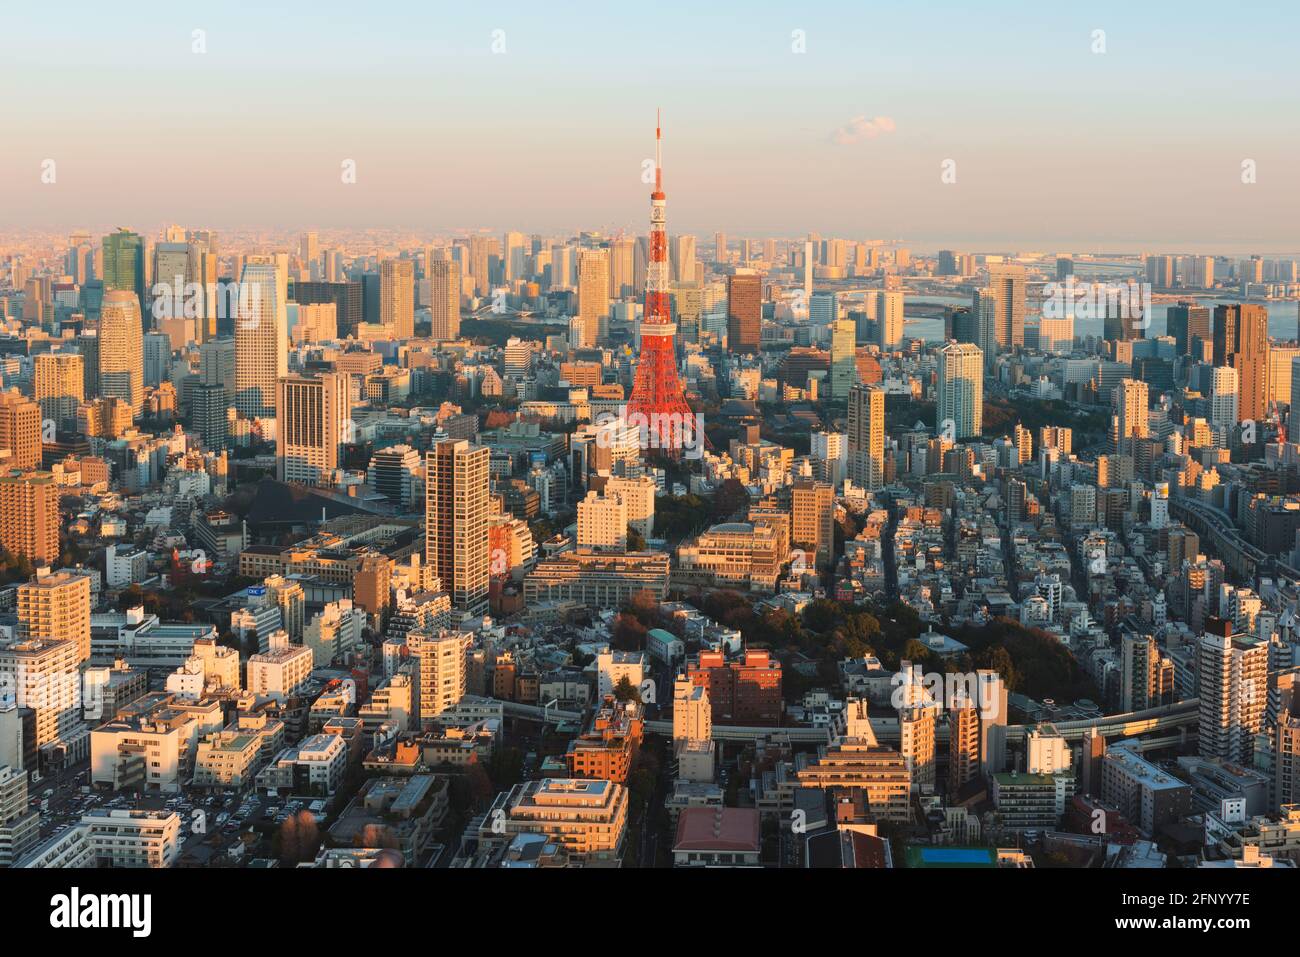 Tokyo, Japon - 14 janvier 2016 : vue sur les gratte-ciel de Tokyo au coucher du soleil avec la Tour de Tokyo. Tokyo est à la fois la capitale et la plus grande ville du Japon. Banque D'Images